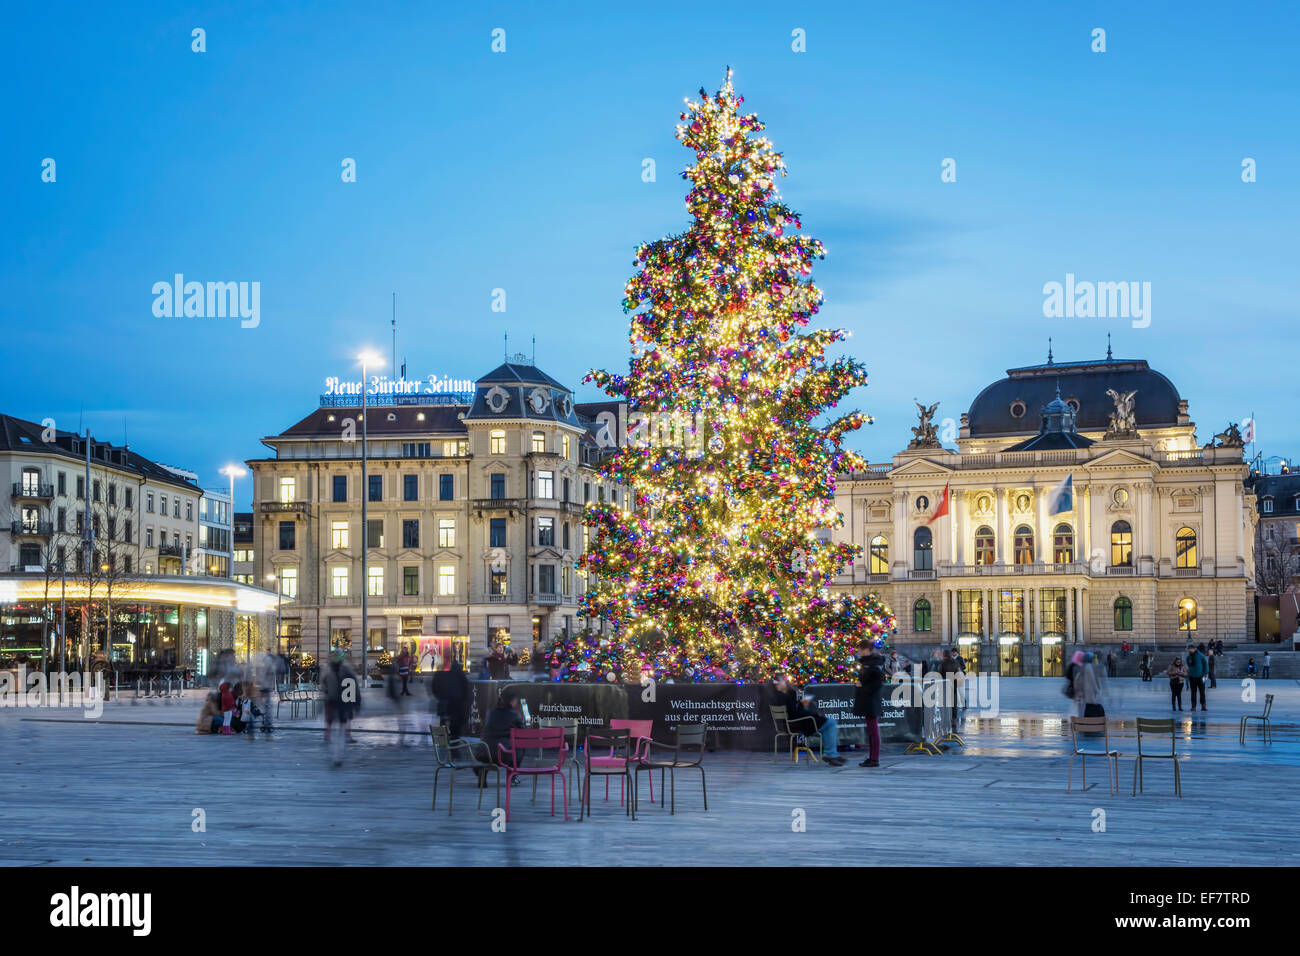 Weihnachtsbaum, Sechselaeuten Square, Opernhaus, Zürich, Schweiz Stockfoto